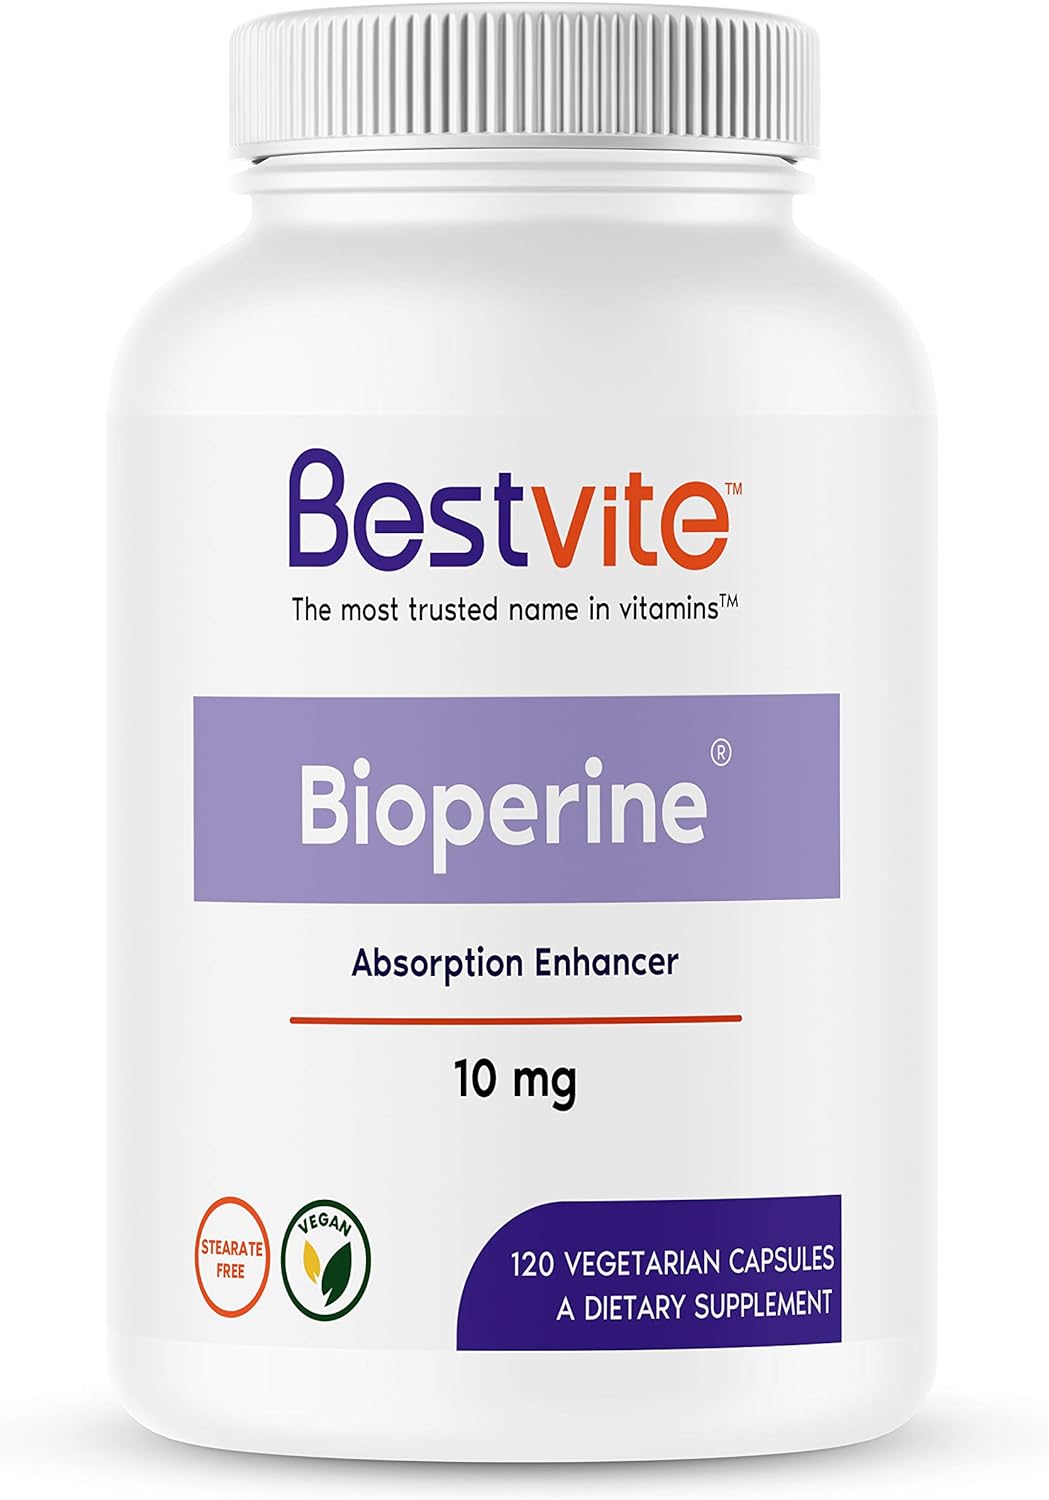 BESTVITE Bioperine 10mg (120 Vegetarian Capsules) - No Stearates - Veg